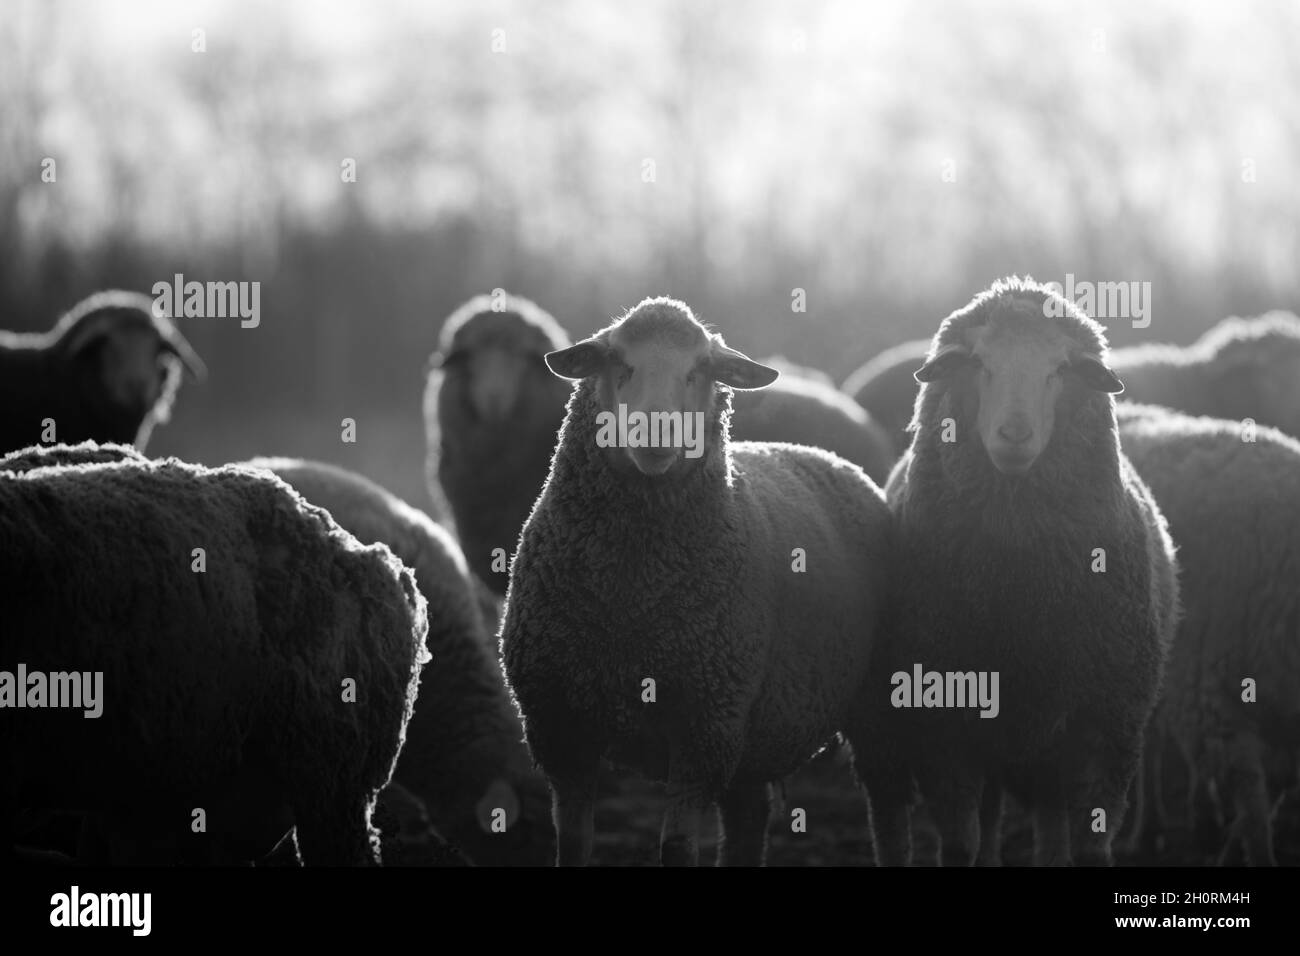 Gruppo di pecore che camminano sui terreni agricoli in inverno e guardano la macchina fotografica. Immagine in bianco e nero Foto Stock